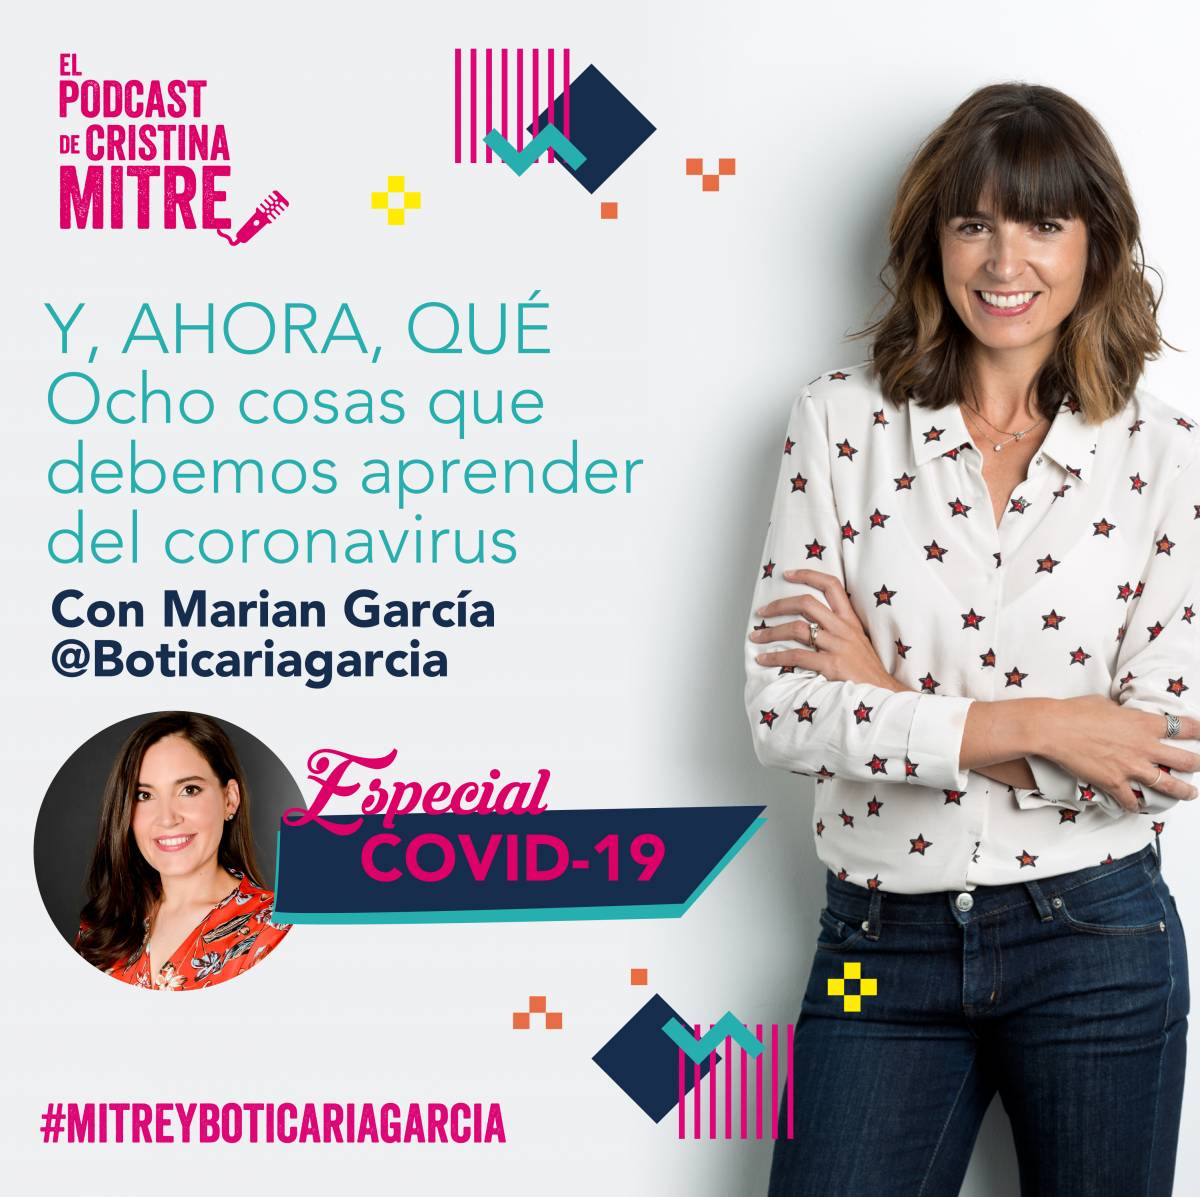 Especial COVID-19 El podcast de Cristina Mitre